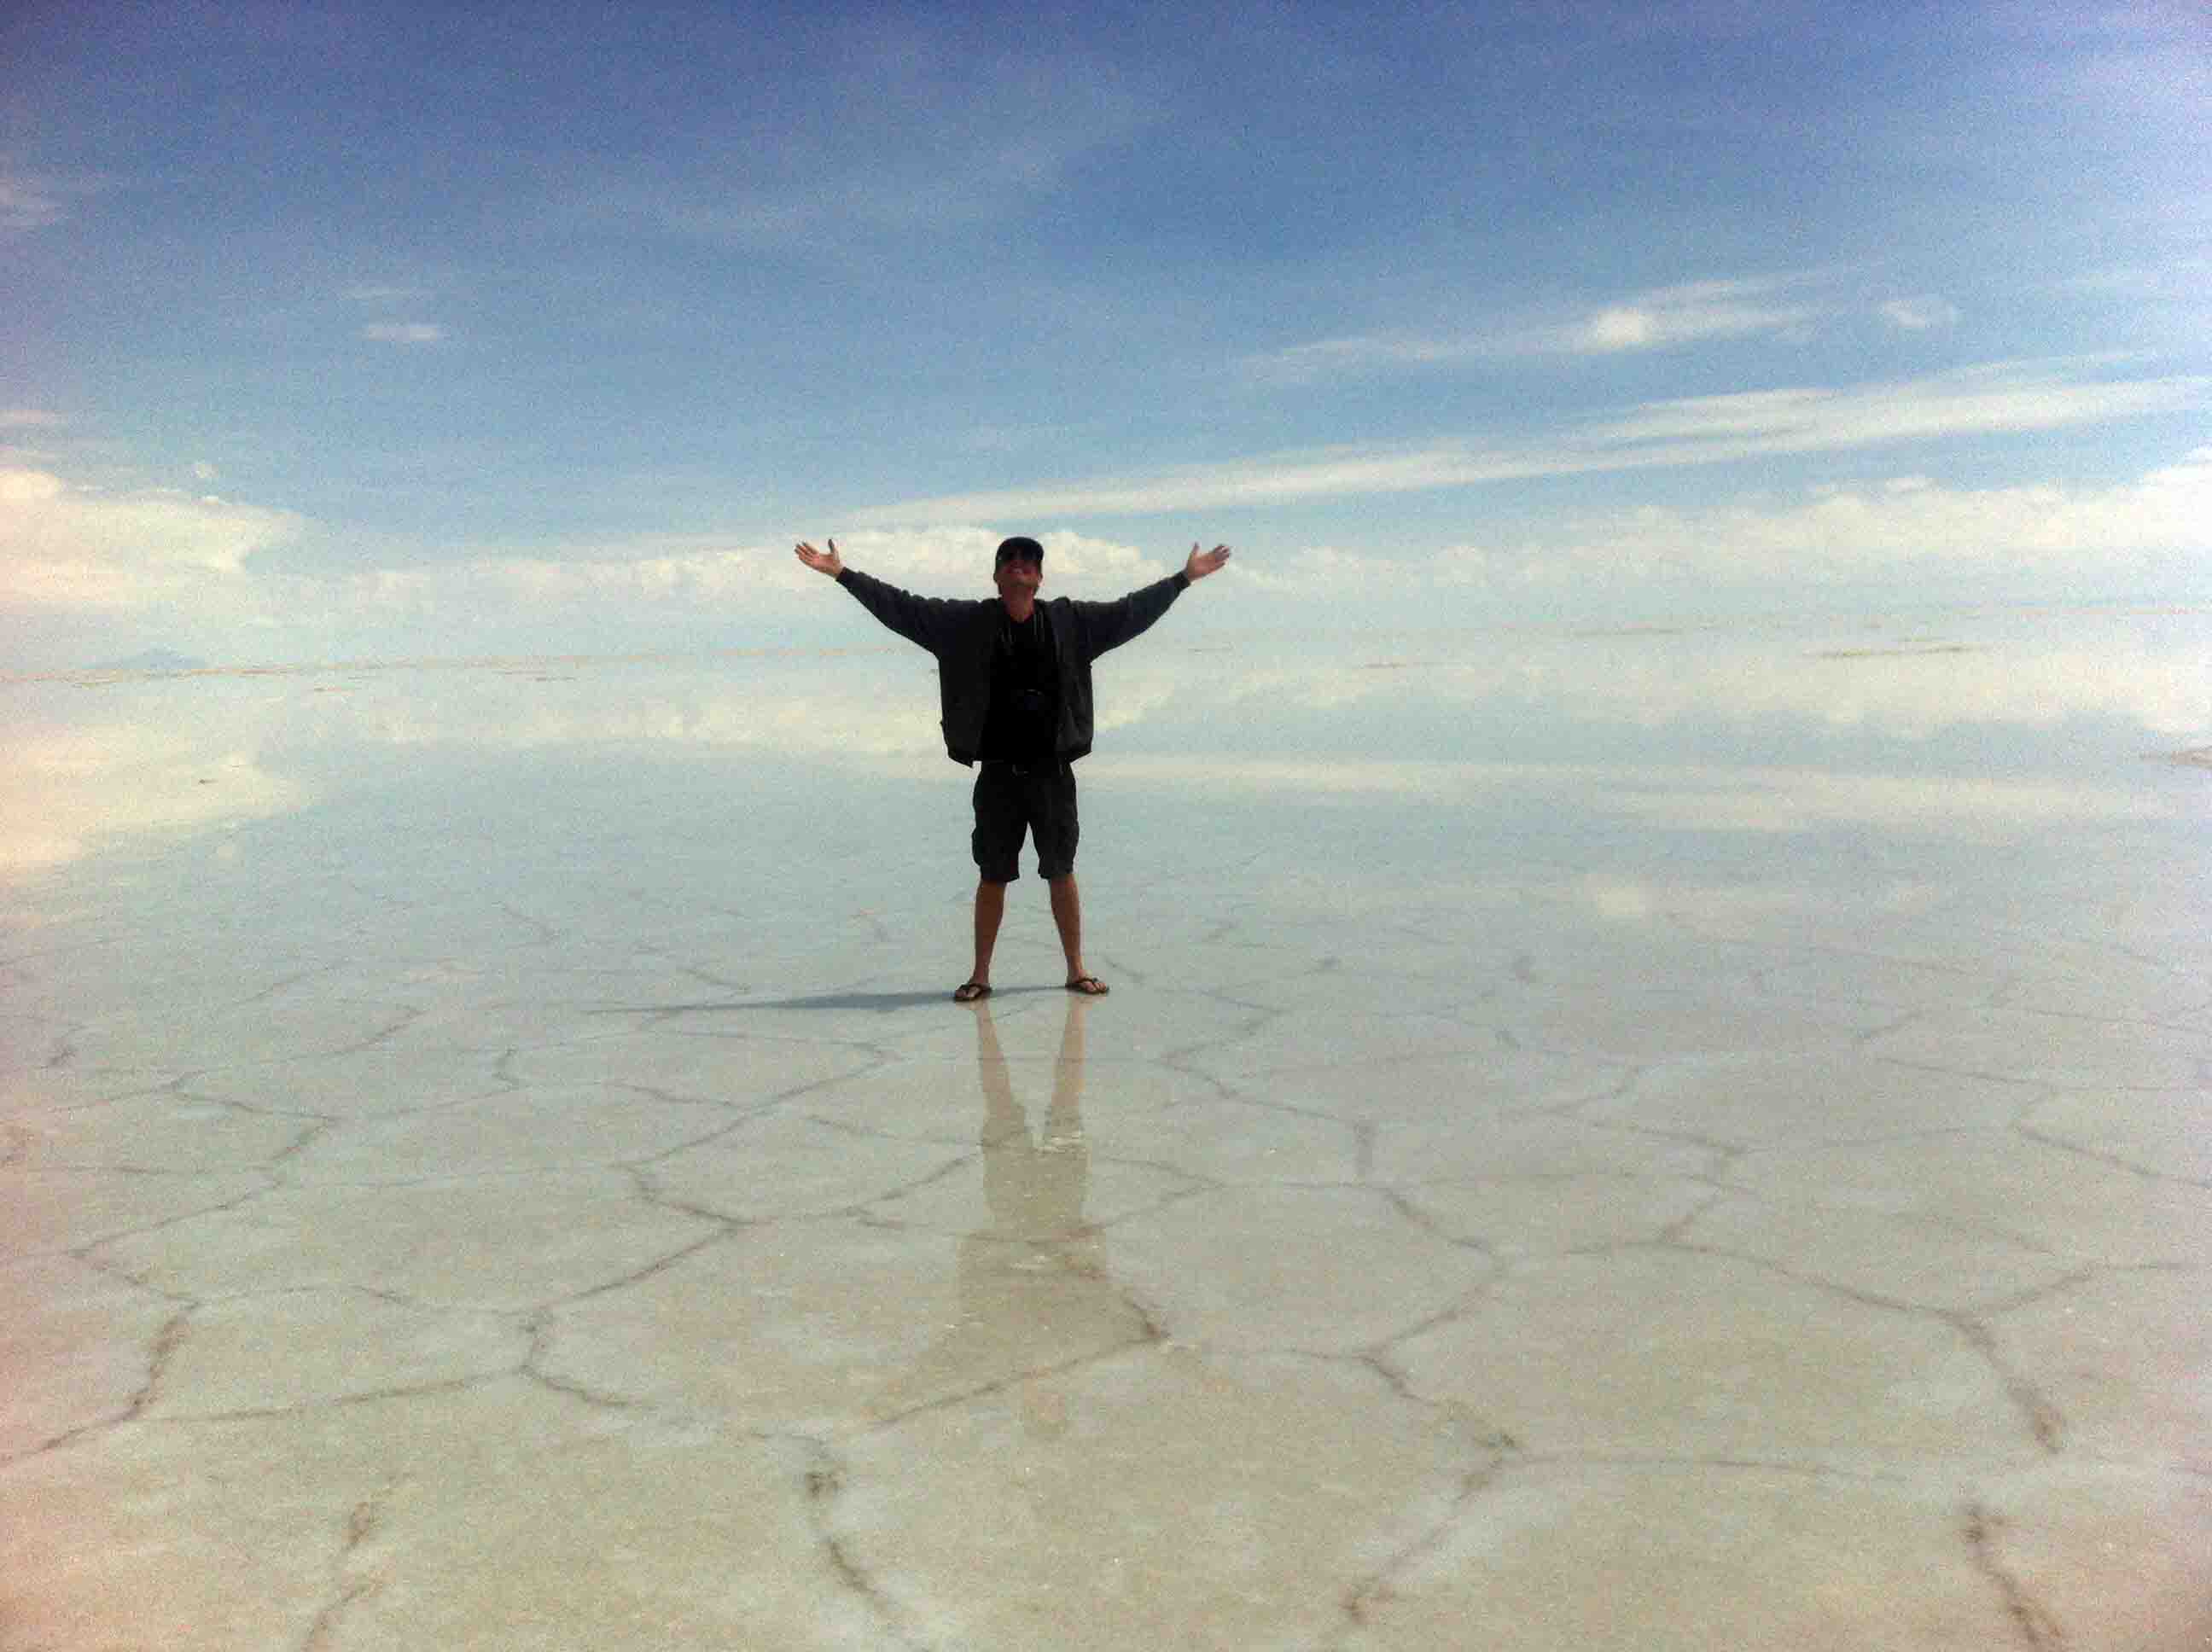 Day 3: Uyuni Salt Flats Tour – Salt Flats & Road to Potosi